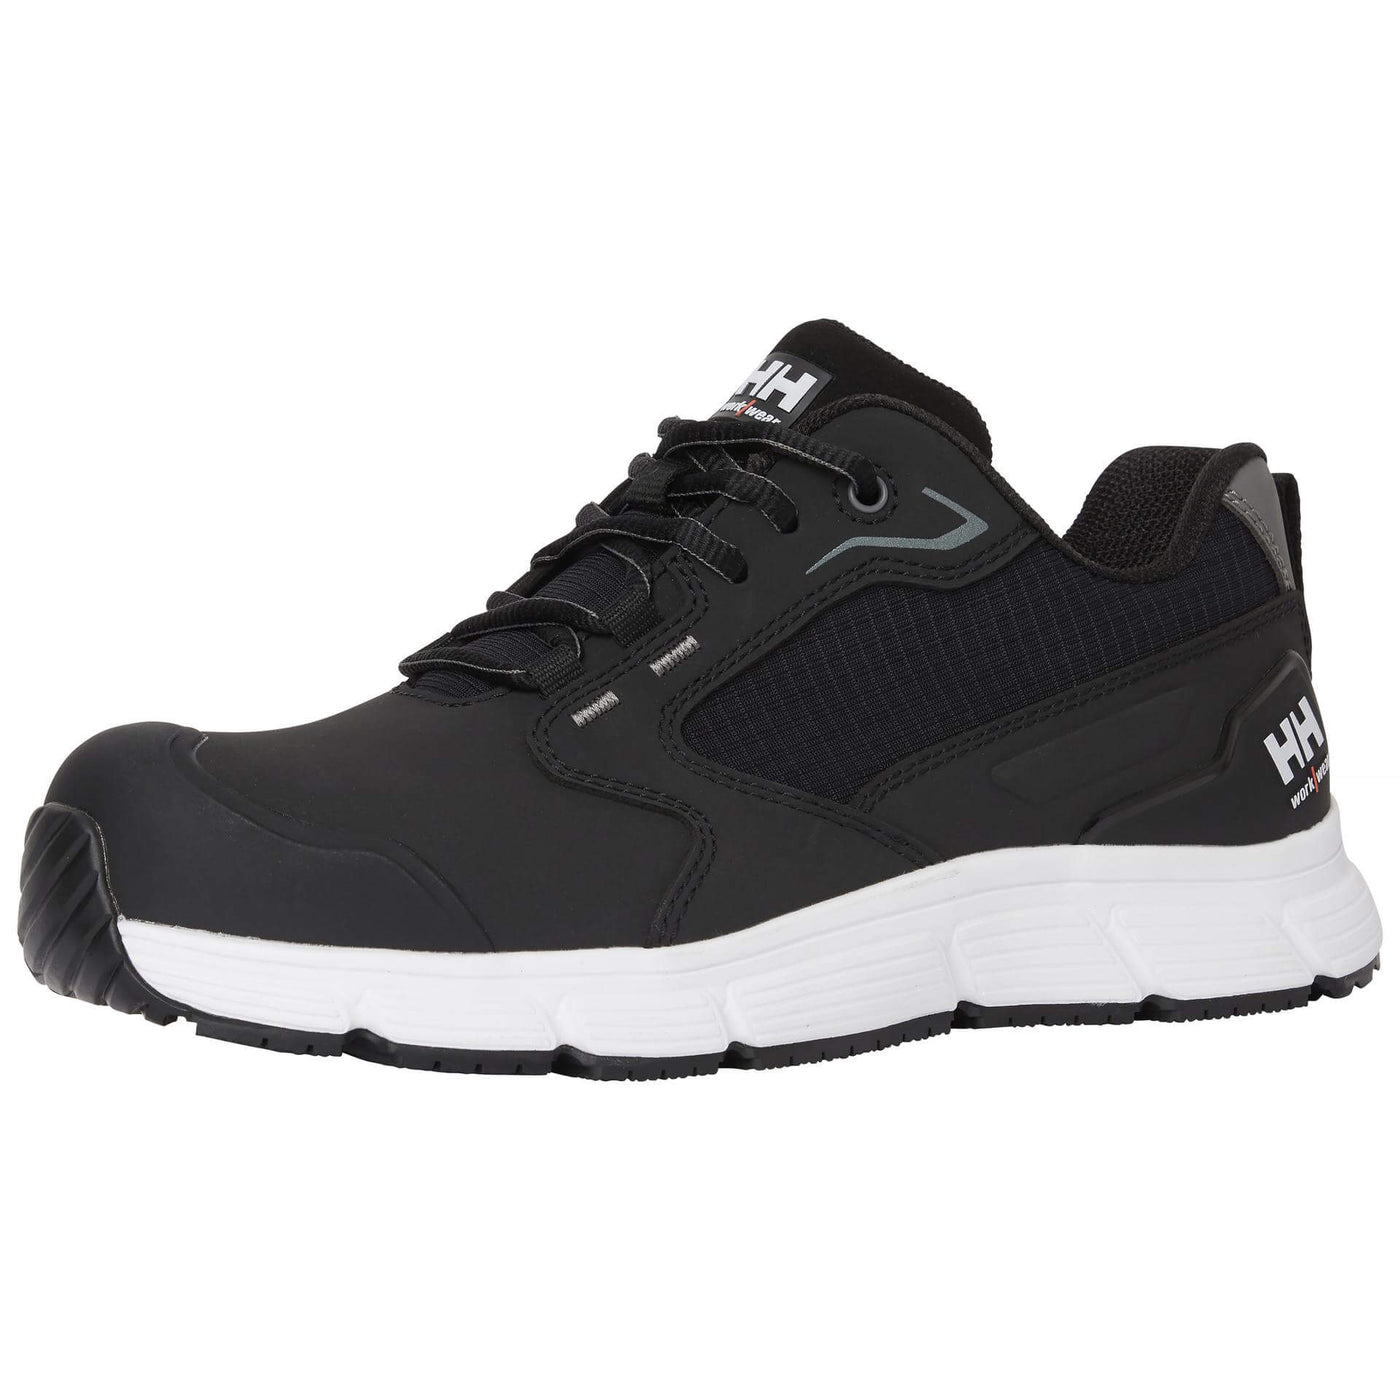 Helly Hansen Kensington MXR Low S3L Composite Toe Safety Shoes Black/White Front#colour_black-white